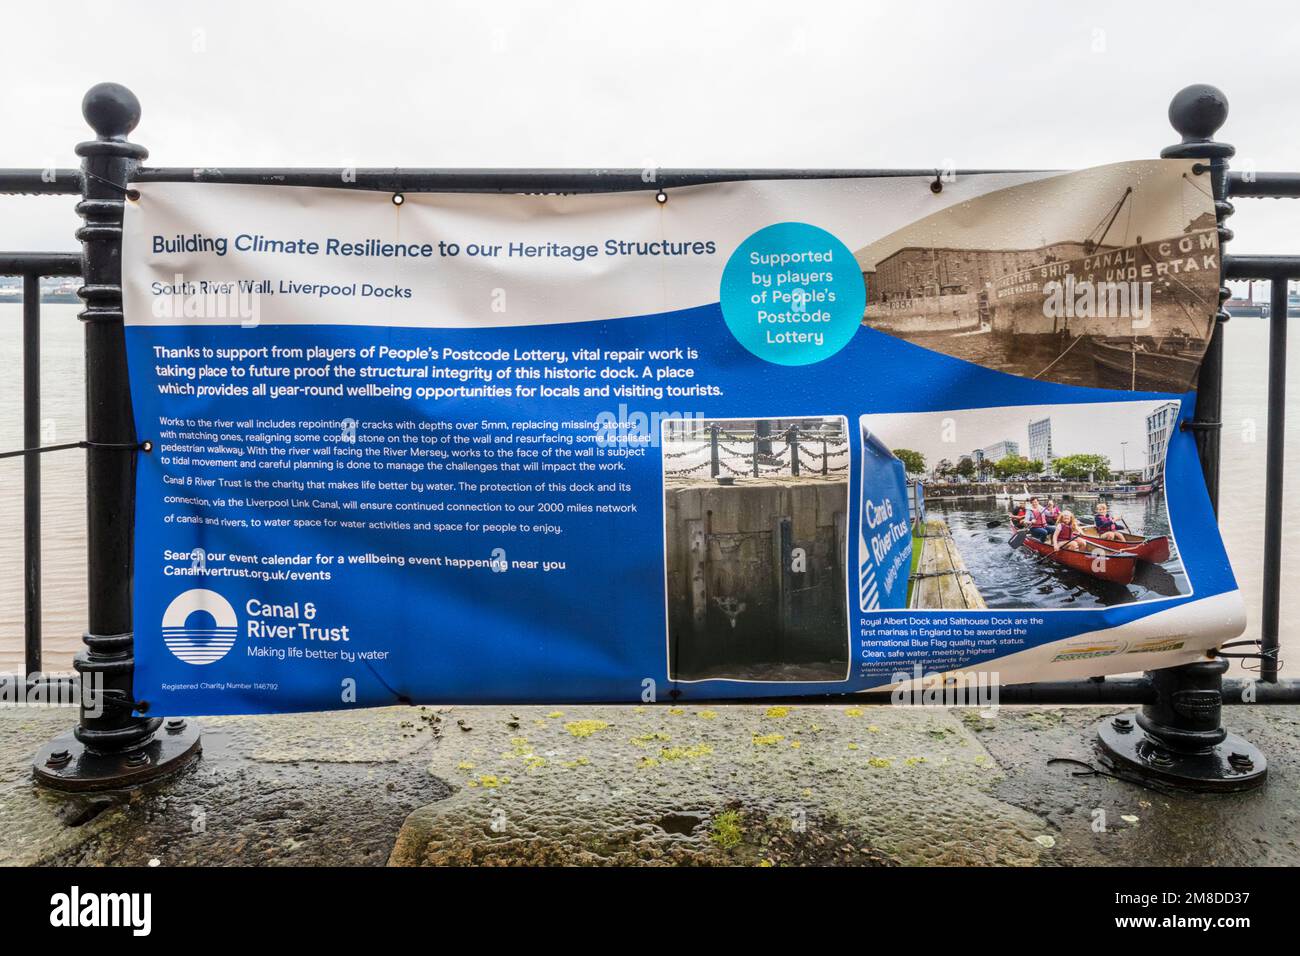 Le panneau Canal & River Trust sur le front de mer de Liverpool explique les travaux visant à intégrer la résilience climatique à la structure des quais. Banque D'Images